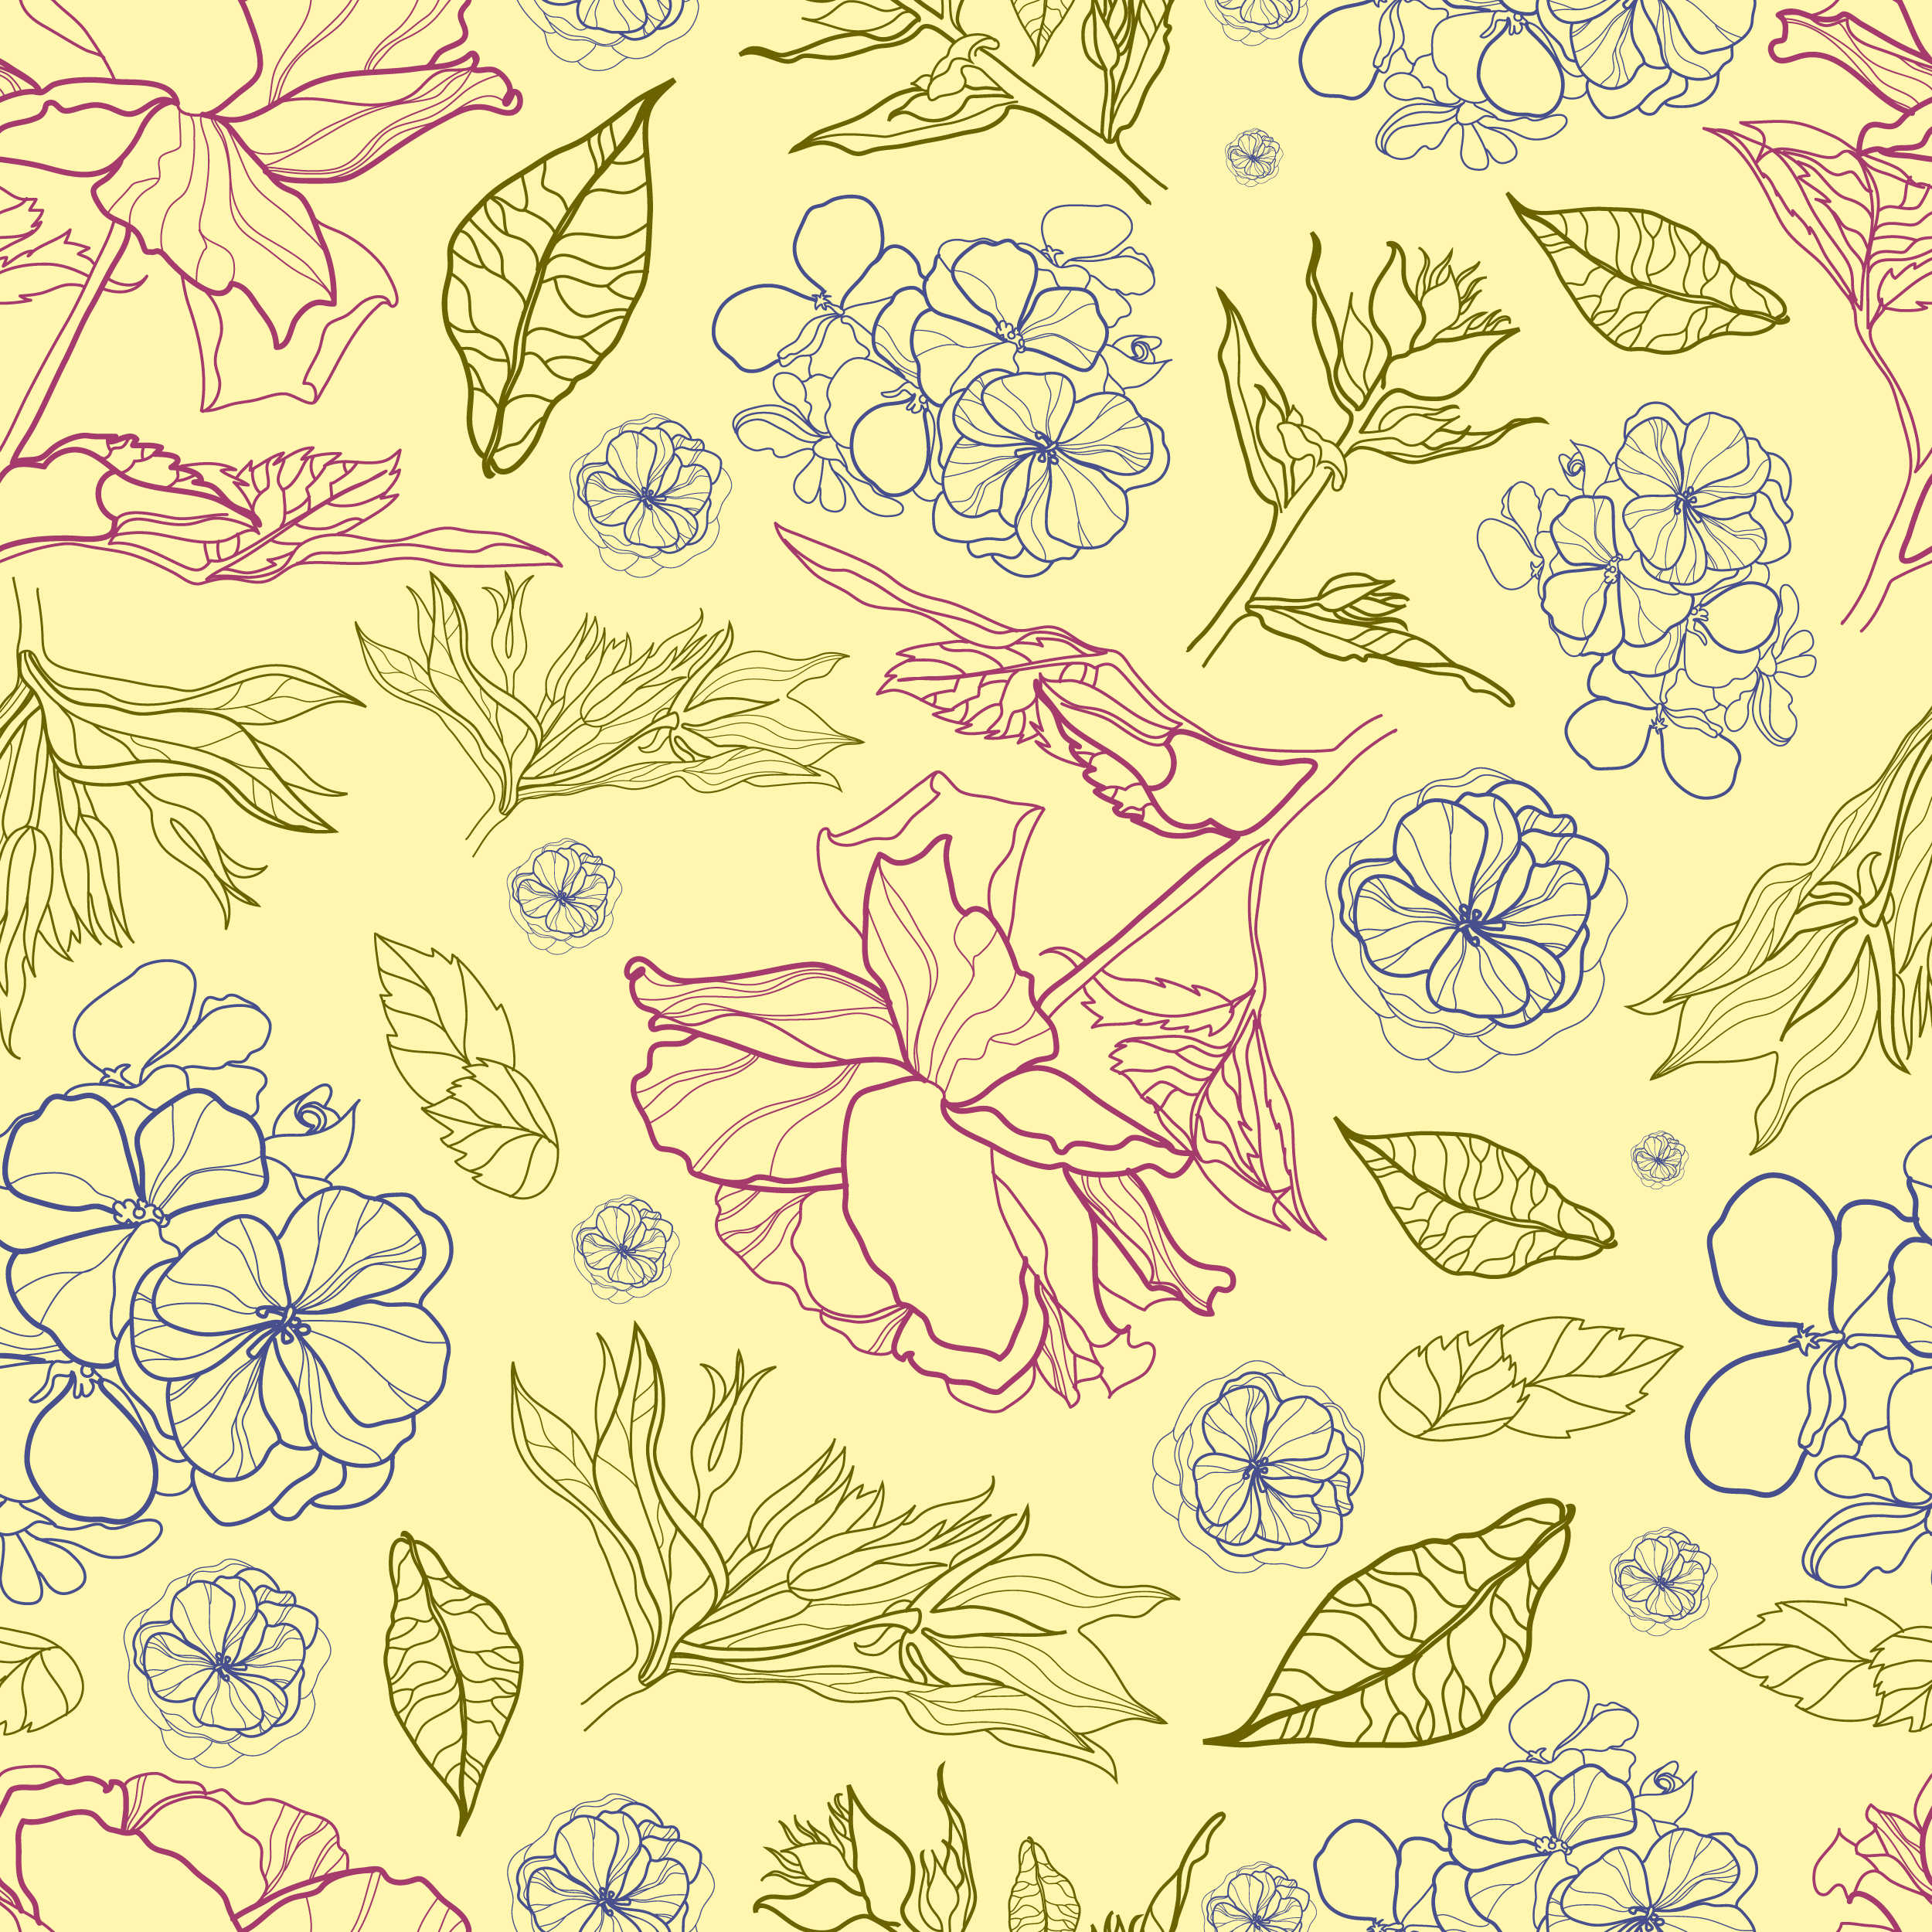 壁紙 背景イラスト 花の模様 柄 パターン No 337 線画 葉 紫青黄緑